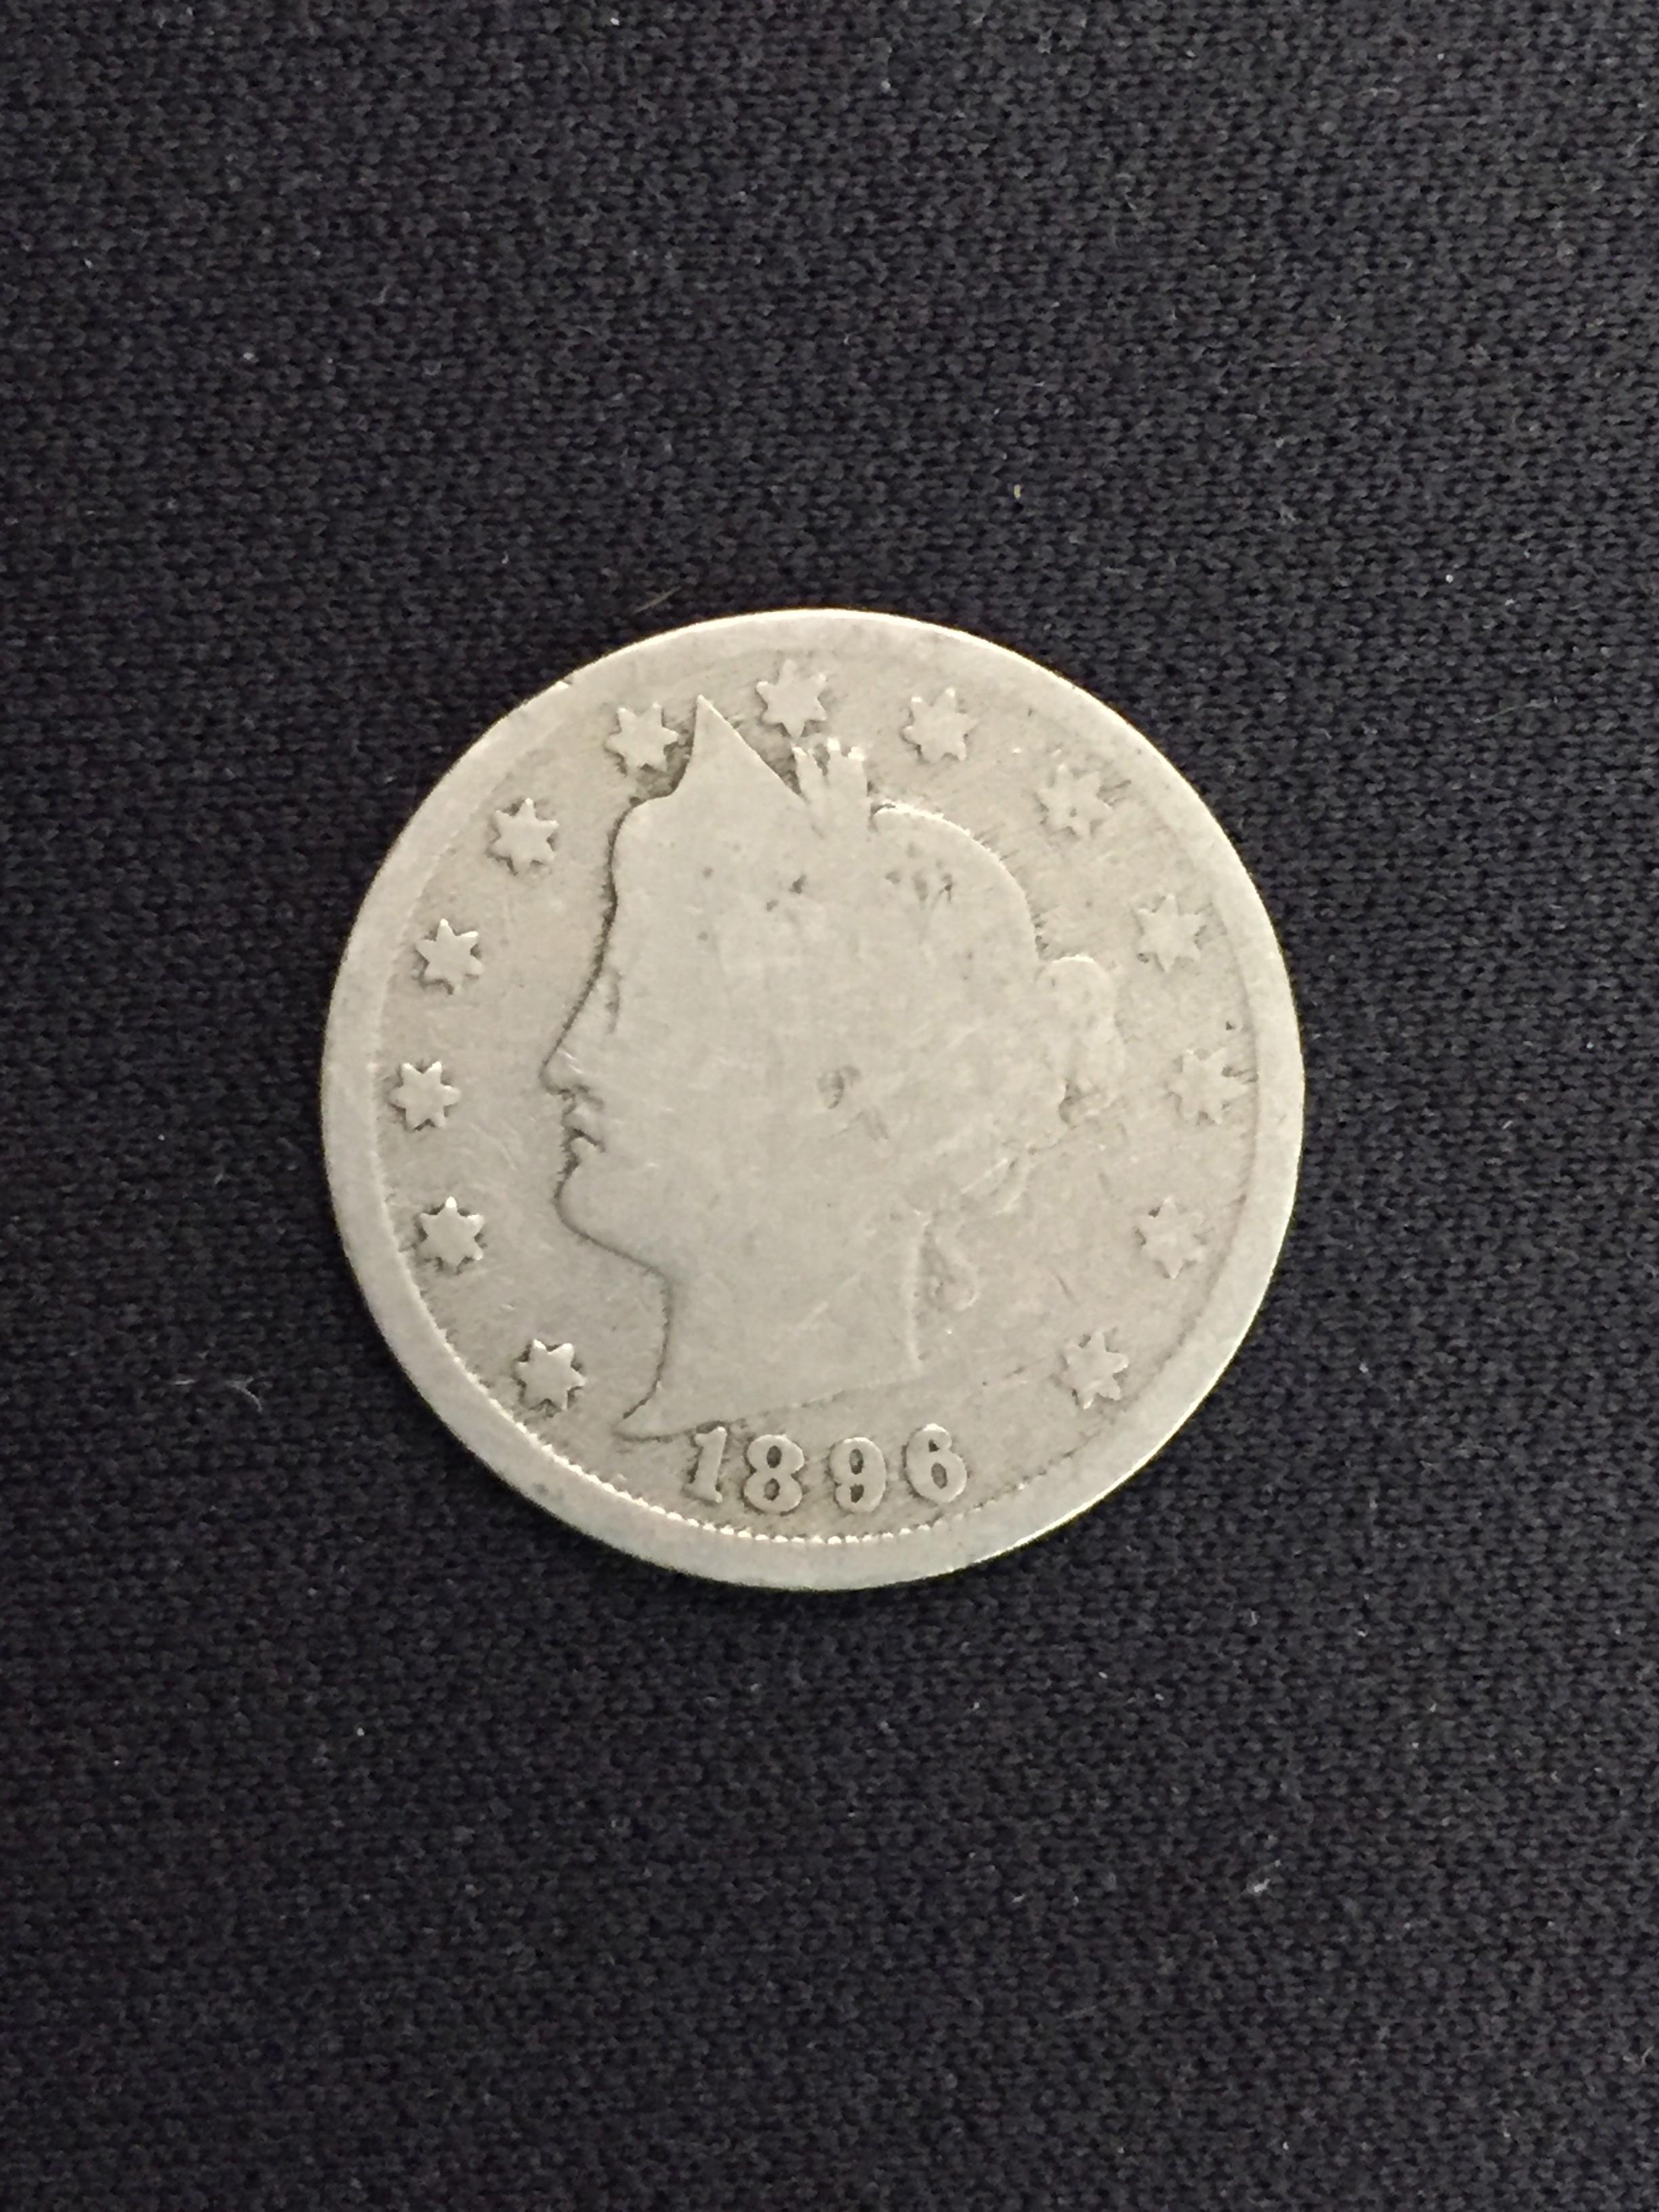 1896 United States Liberty V Nickel